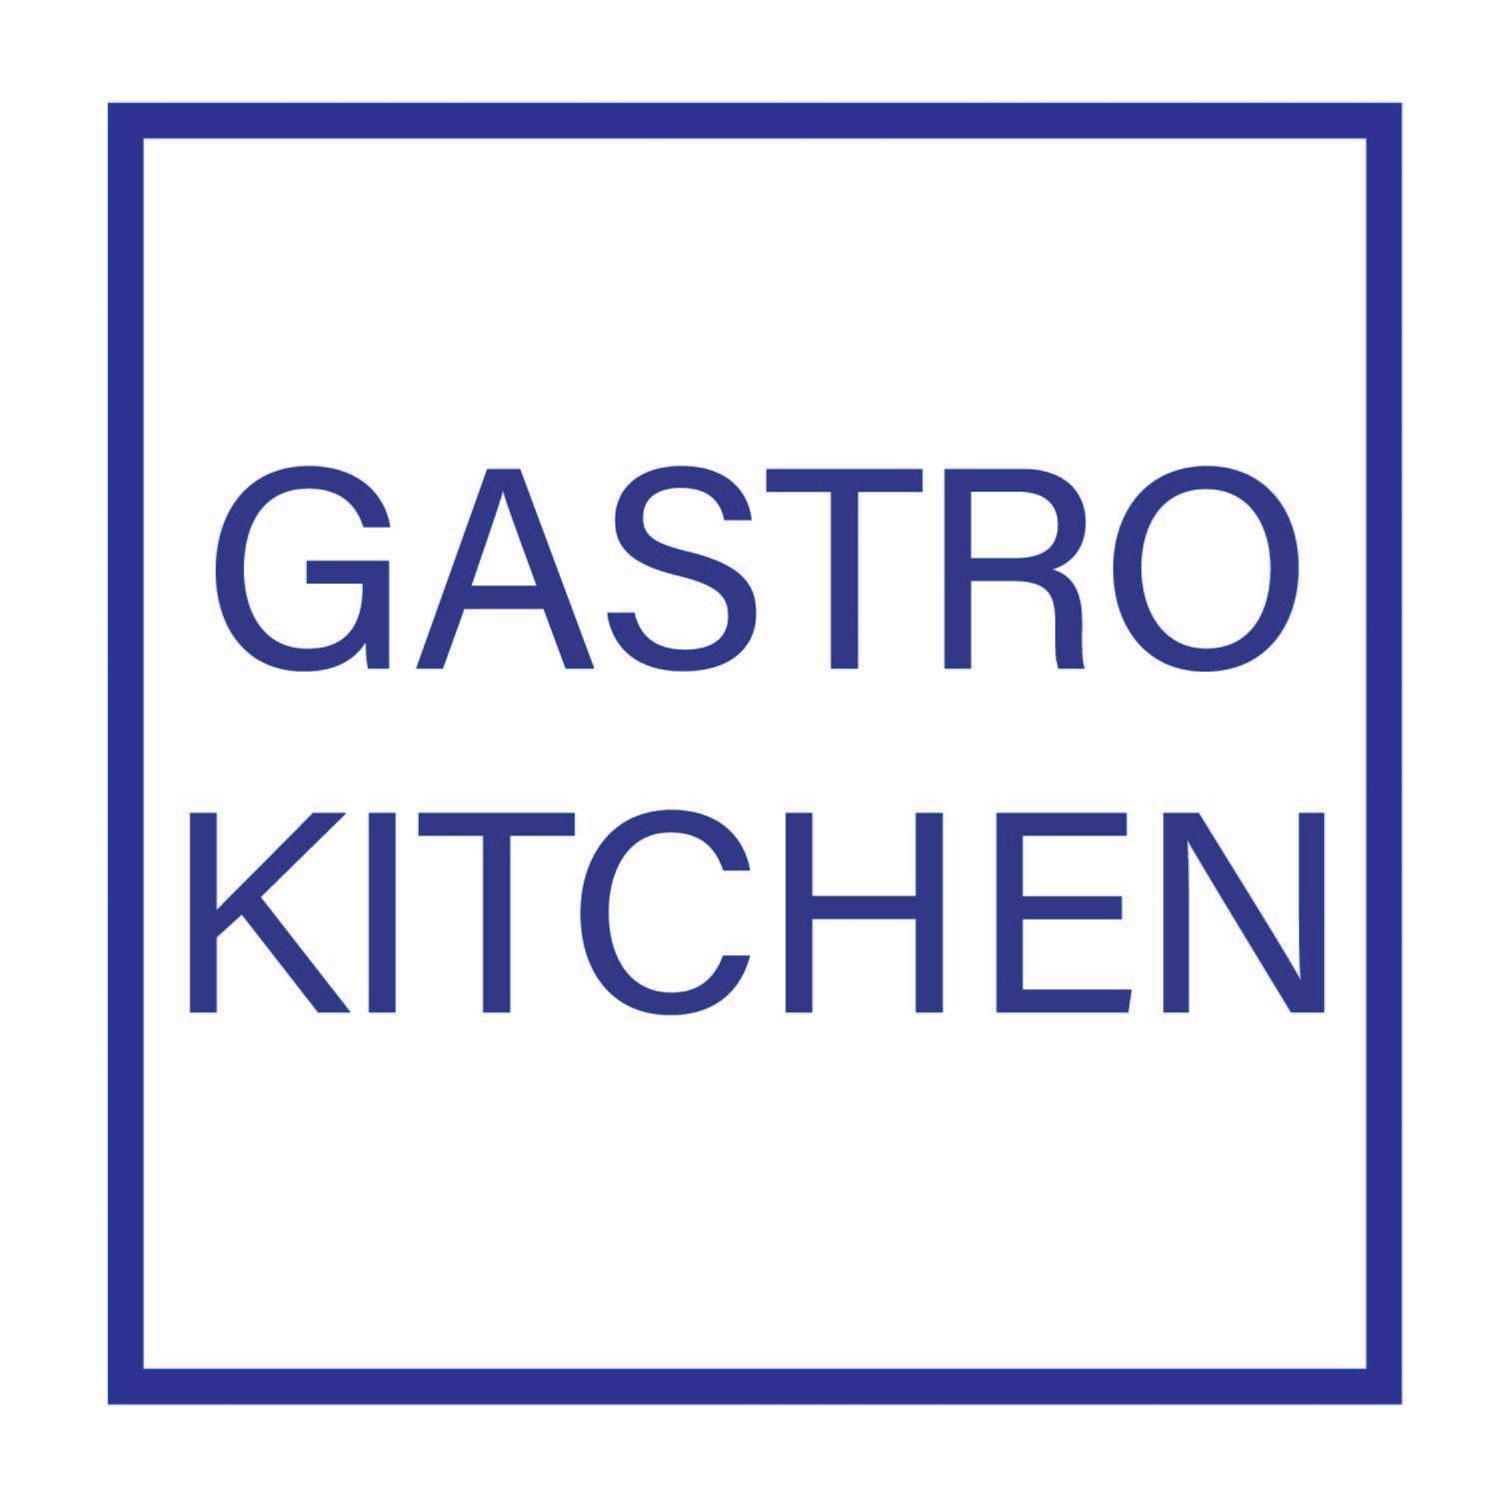 Friday Brunch at Gastro Kitchen